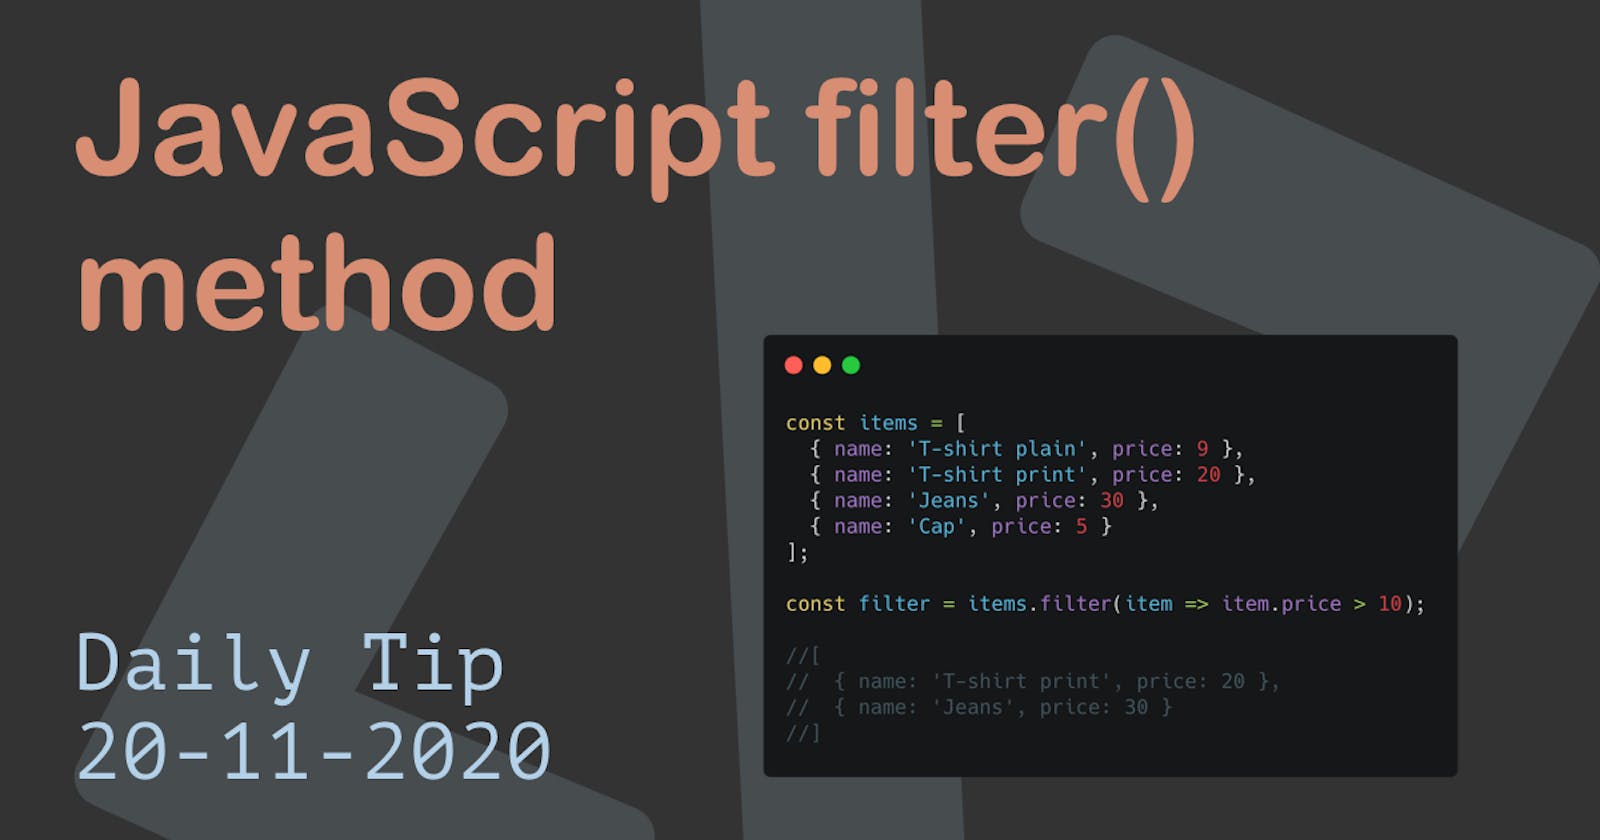 JavaScript filter() method